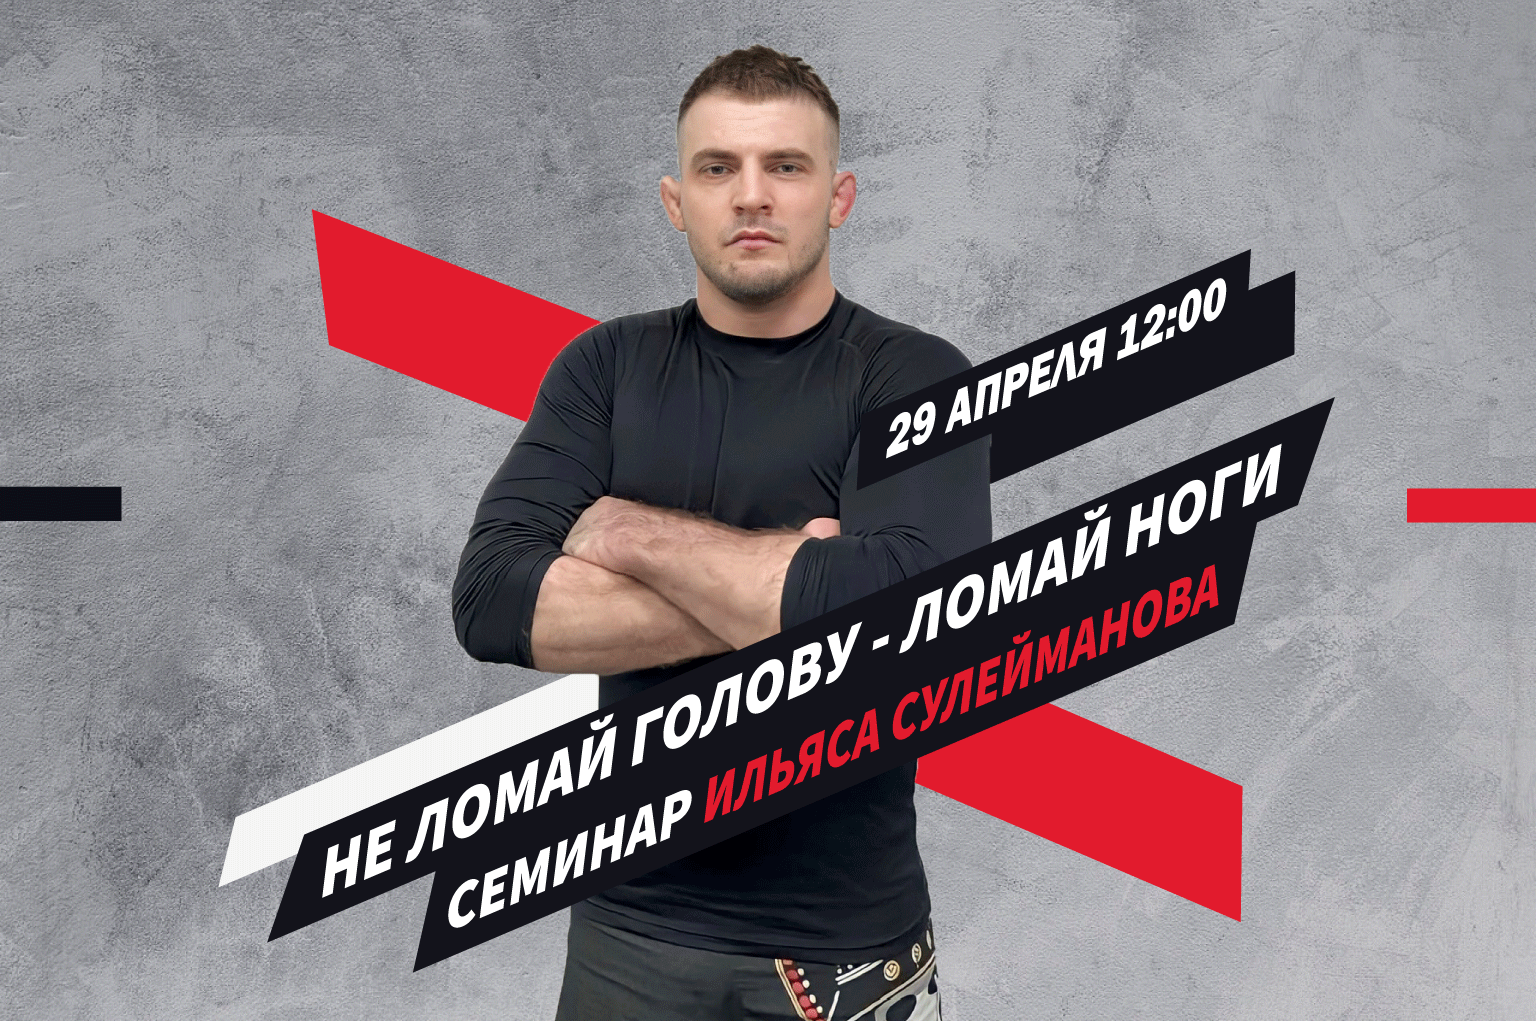 Семинар Ильяса Сулейманова в 187 BJJ 29 апреля!